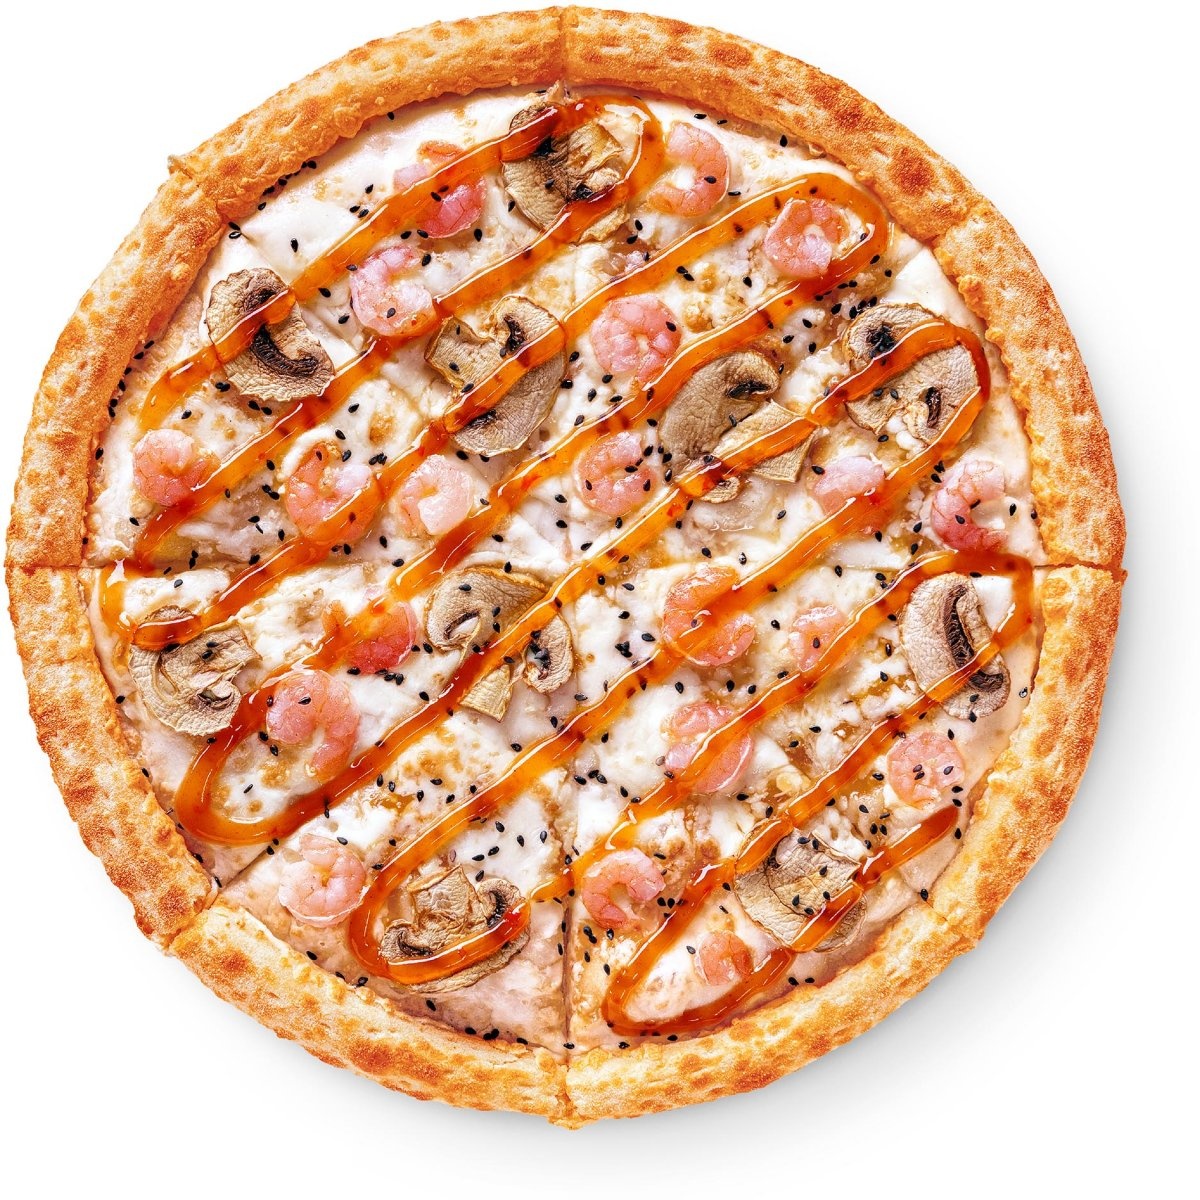 состав пепперони додо пицца фото 100